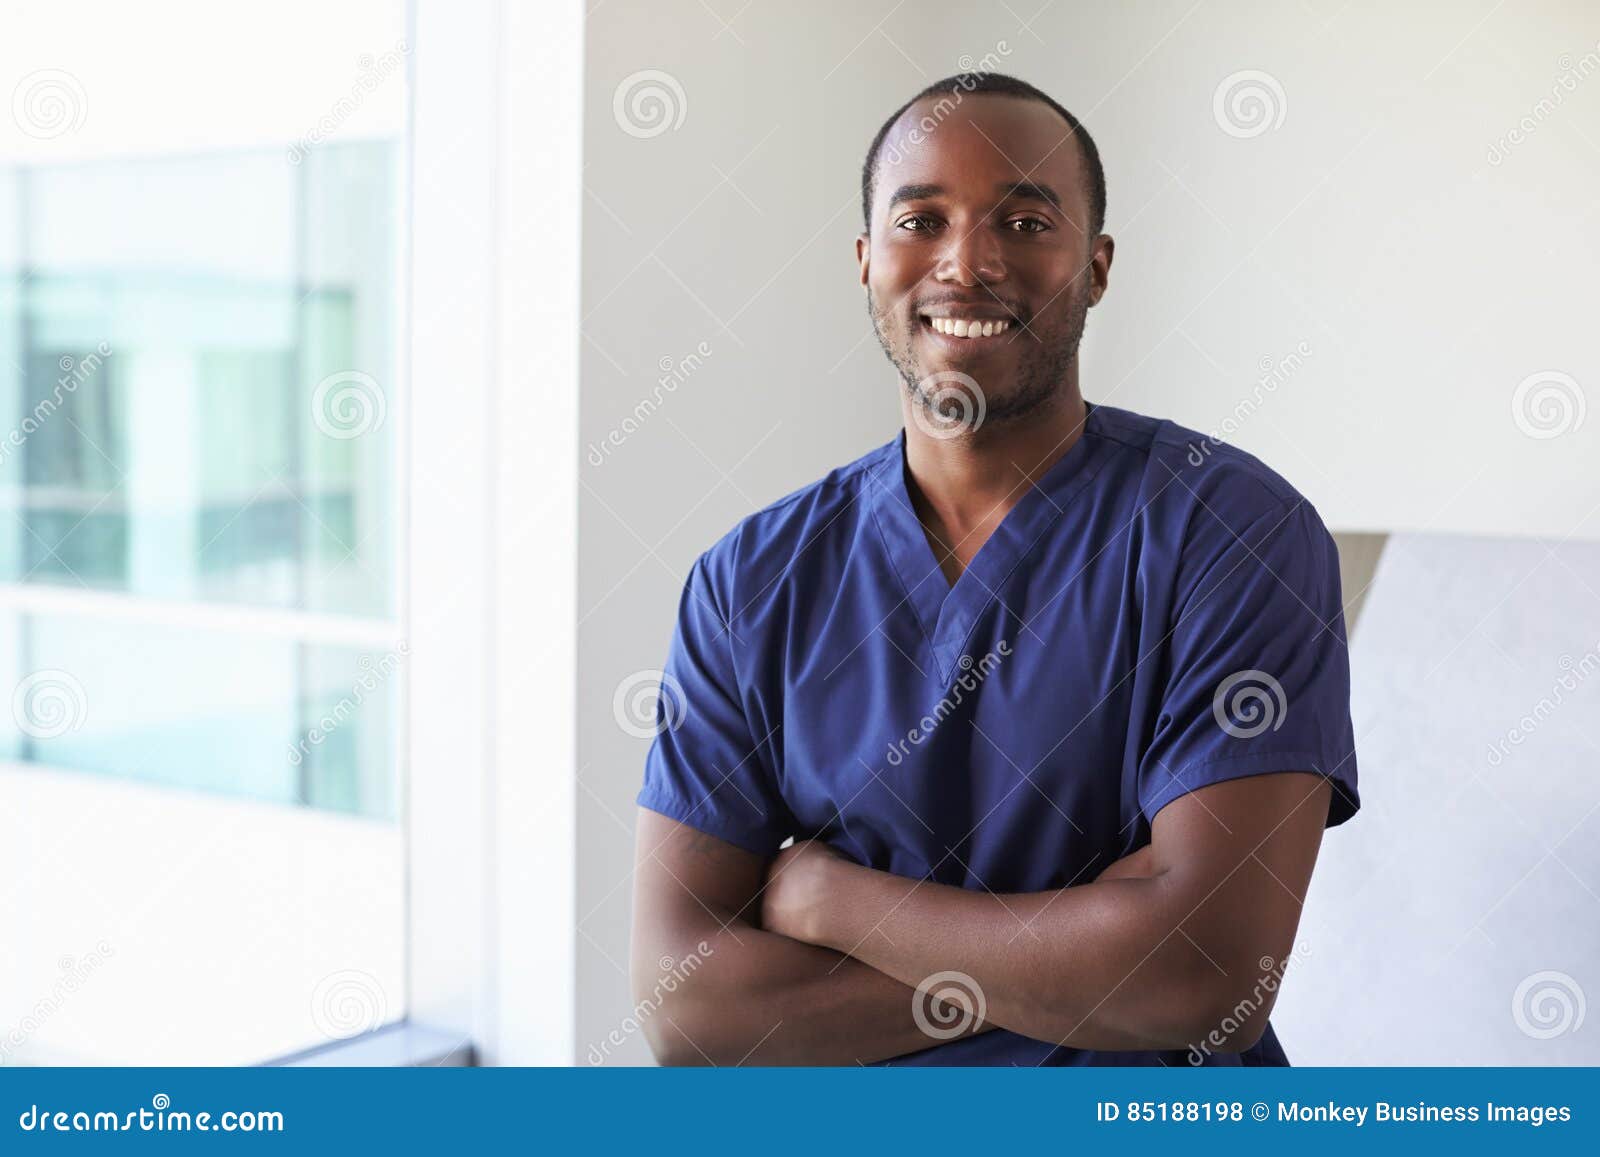 portrait of male nurse wearing scrubs in exam room